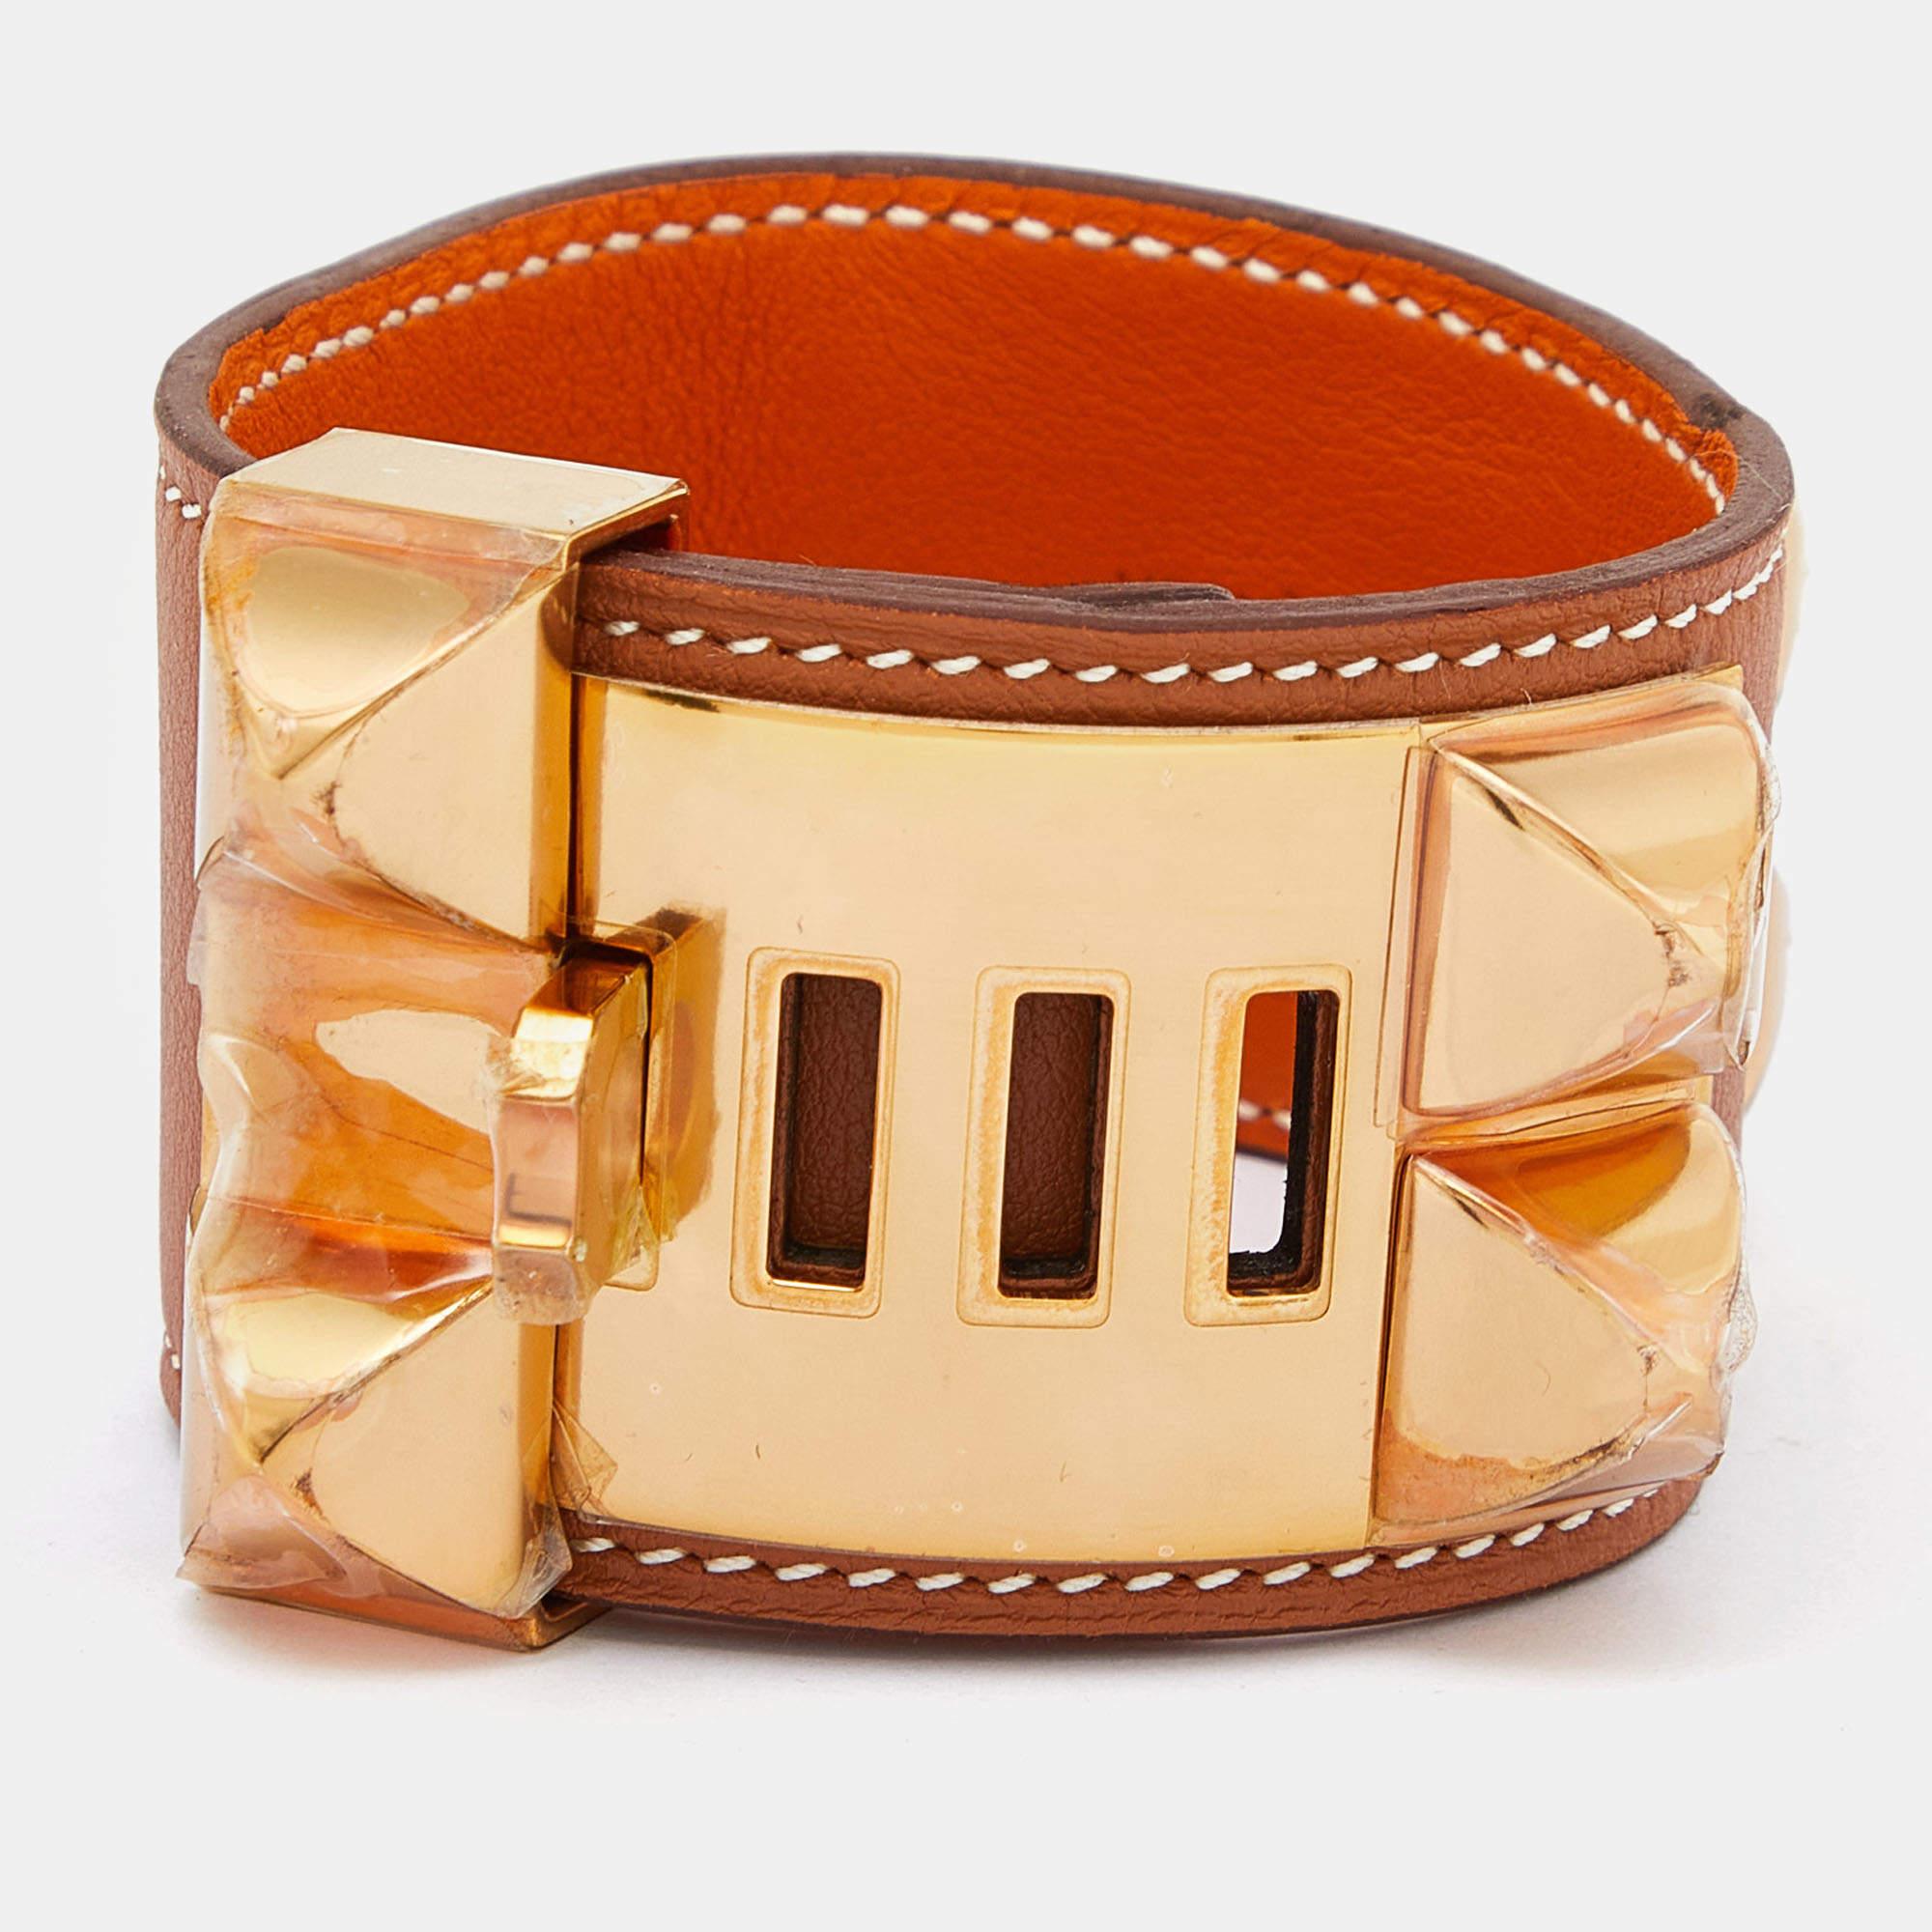 Ce bracelet immédiatement reconnaissable est issu de la collection signature Collier de Chien d'Hermès. Le bracelet, en cuir marron, est orné du motif emblématique Collier de Chien en métal doré comportant des clous pyramidaux et un anneau. Cette